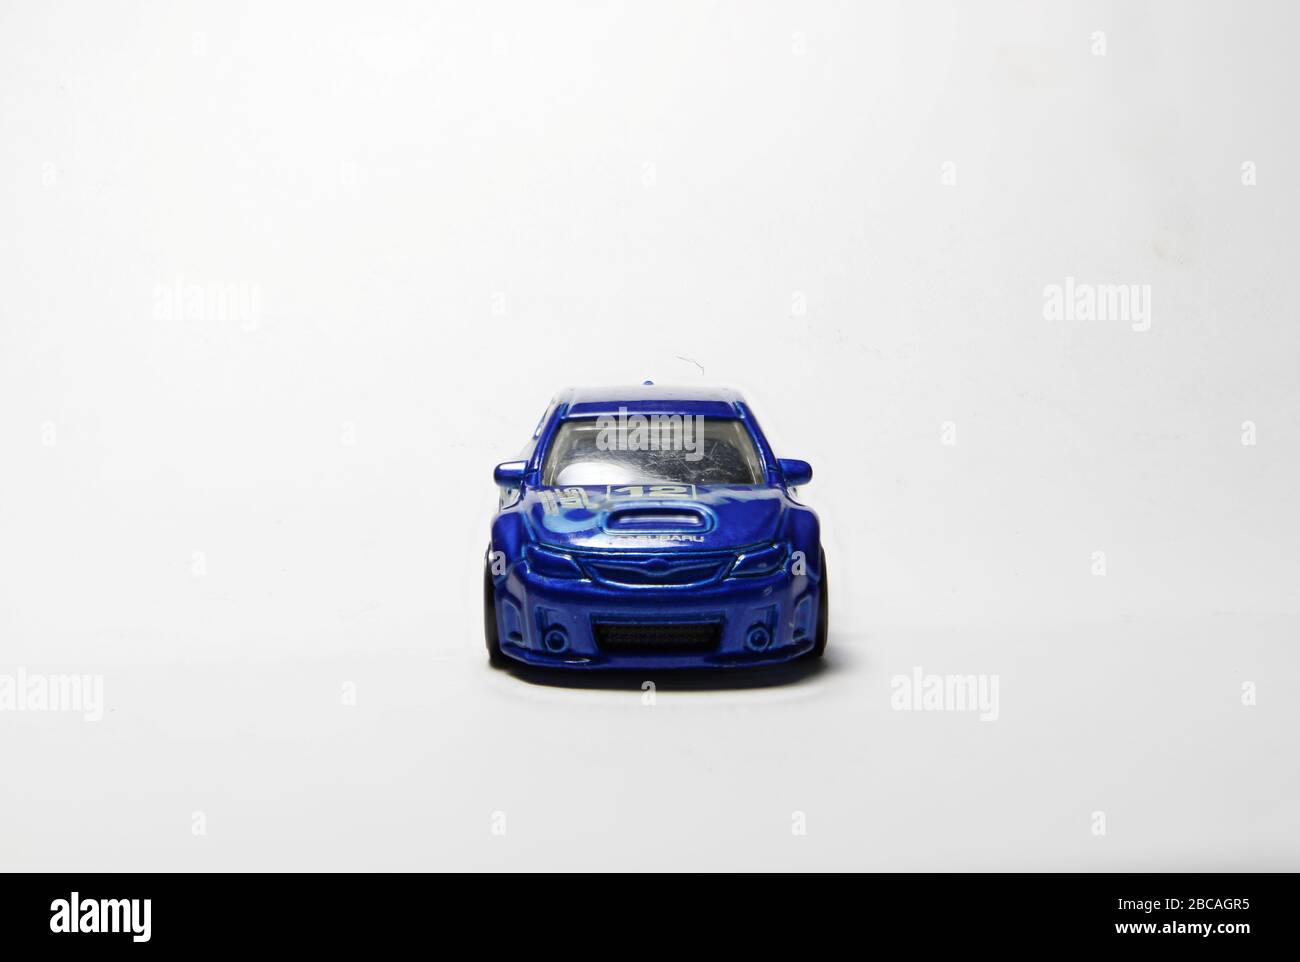 Subaru Rally auto in rally blu. Modello di rivestimento STI con specifiche rally numero di carro 12. Cerchi bianchi e cappotta Subaru tradizionale. Da quattro angolazioni diverse. Foto Stock